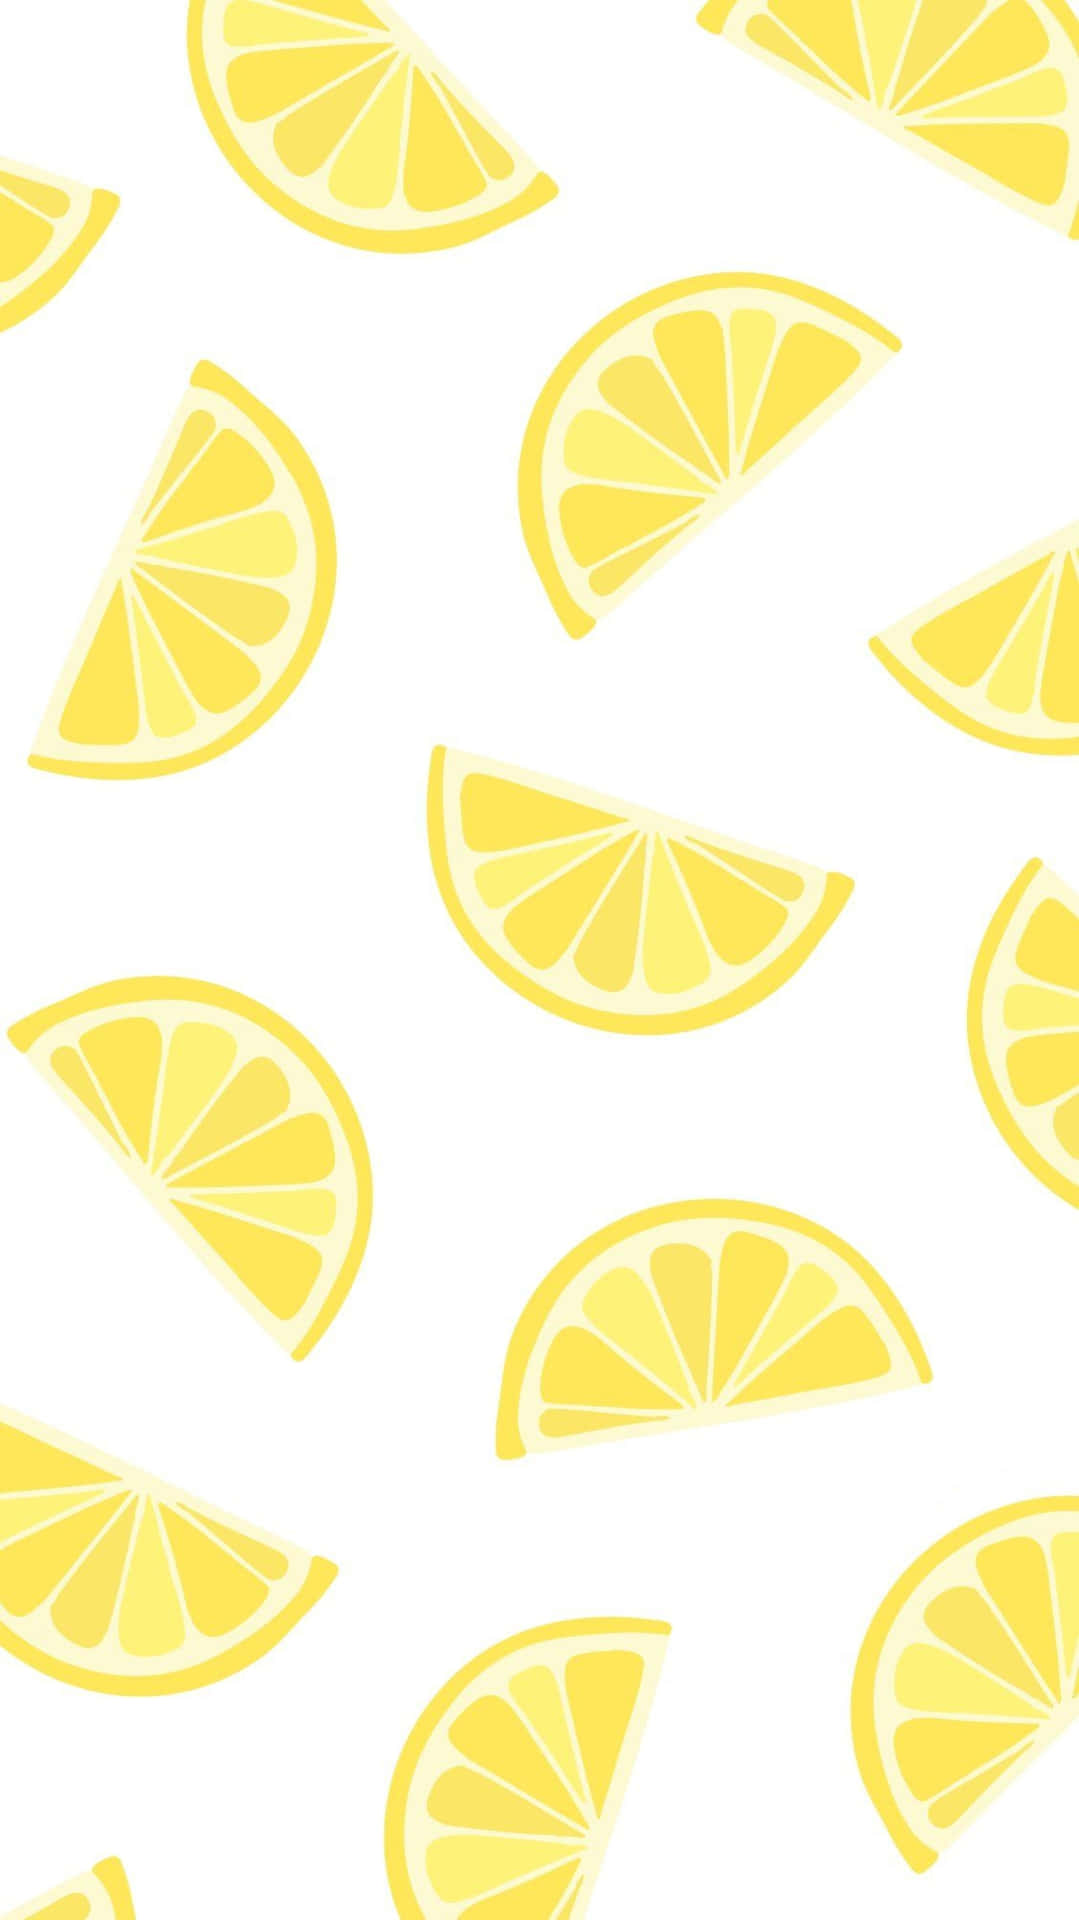 Aufwachenund Den Duft Der Zitronen Riechen! Wallpaper